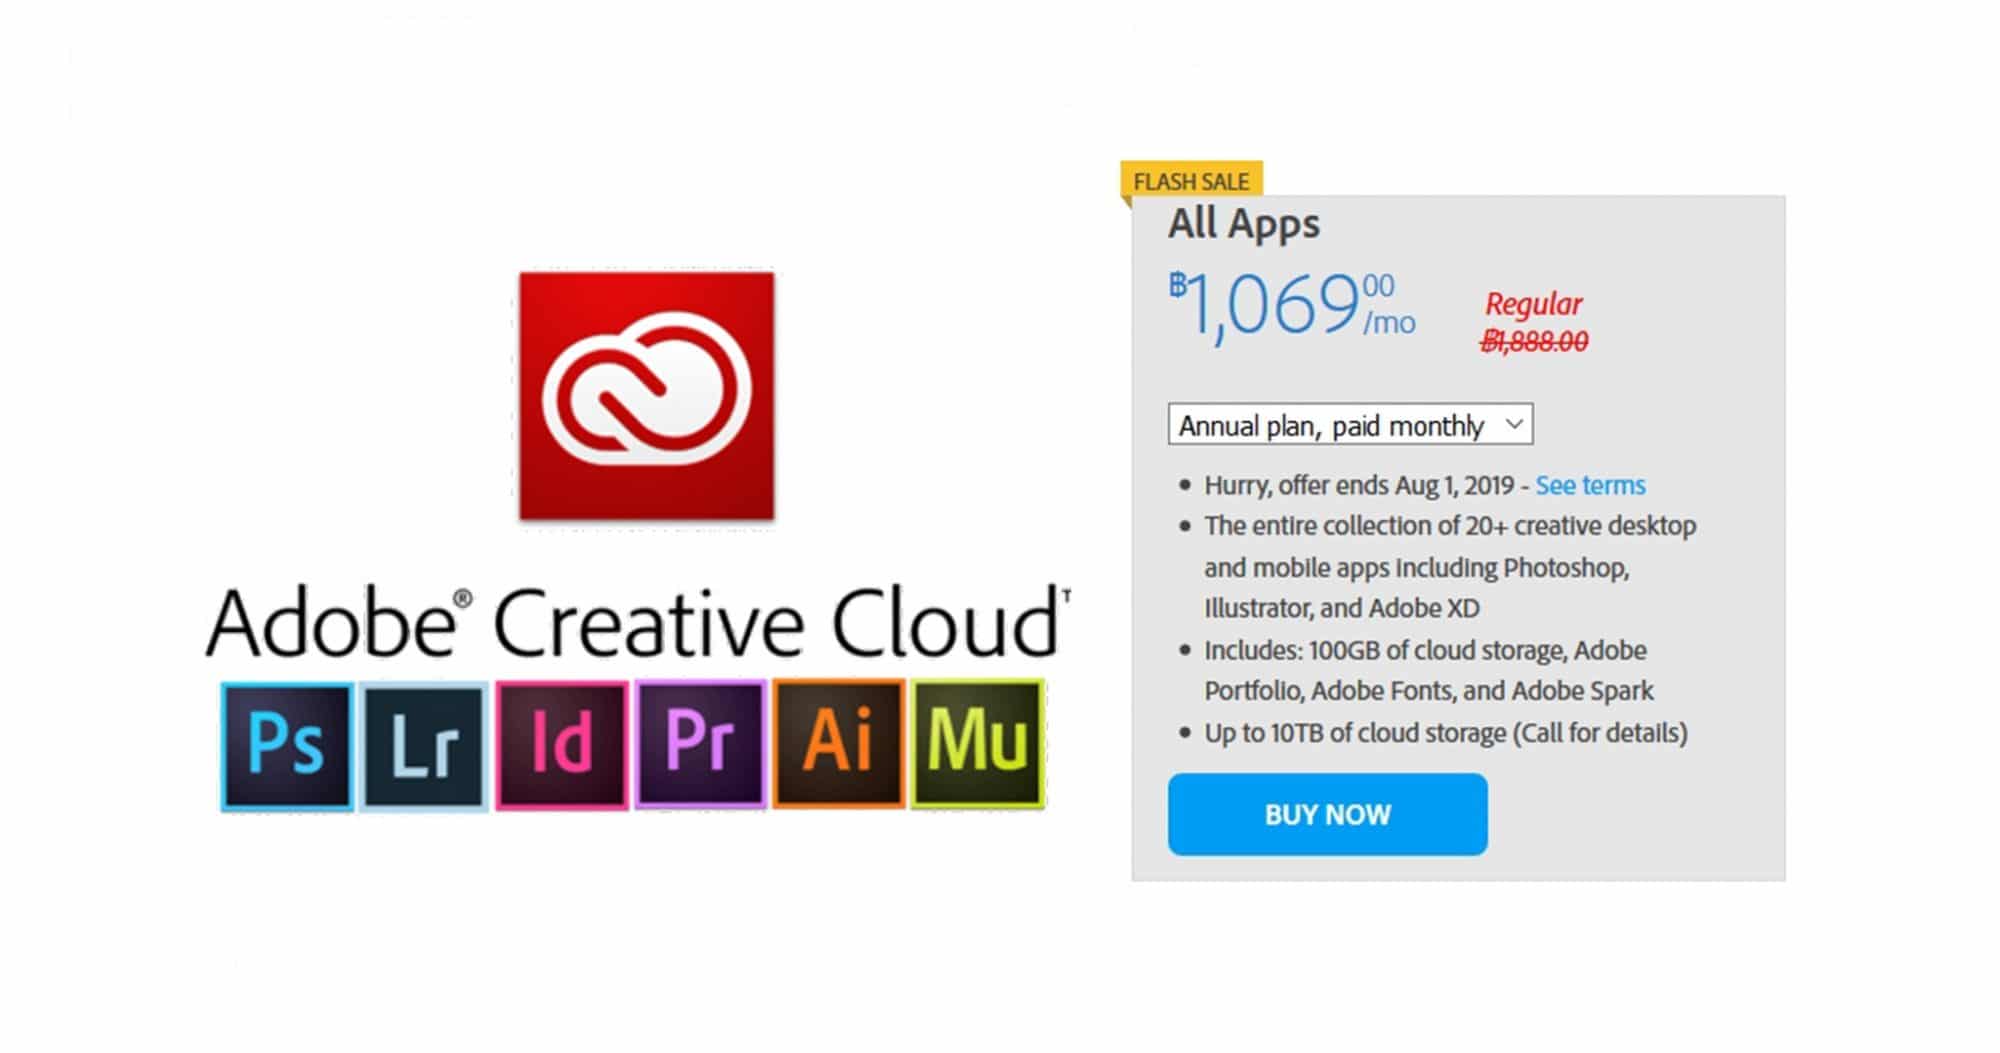 ดีลเด็ด! Adobe ลดราคา Creative Cloud แพ็คเกจแพงสุดเหลือเพียง 1,069.-/เดือน เท่านั้น! 1